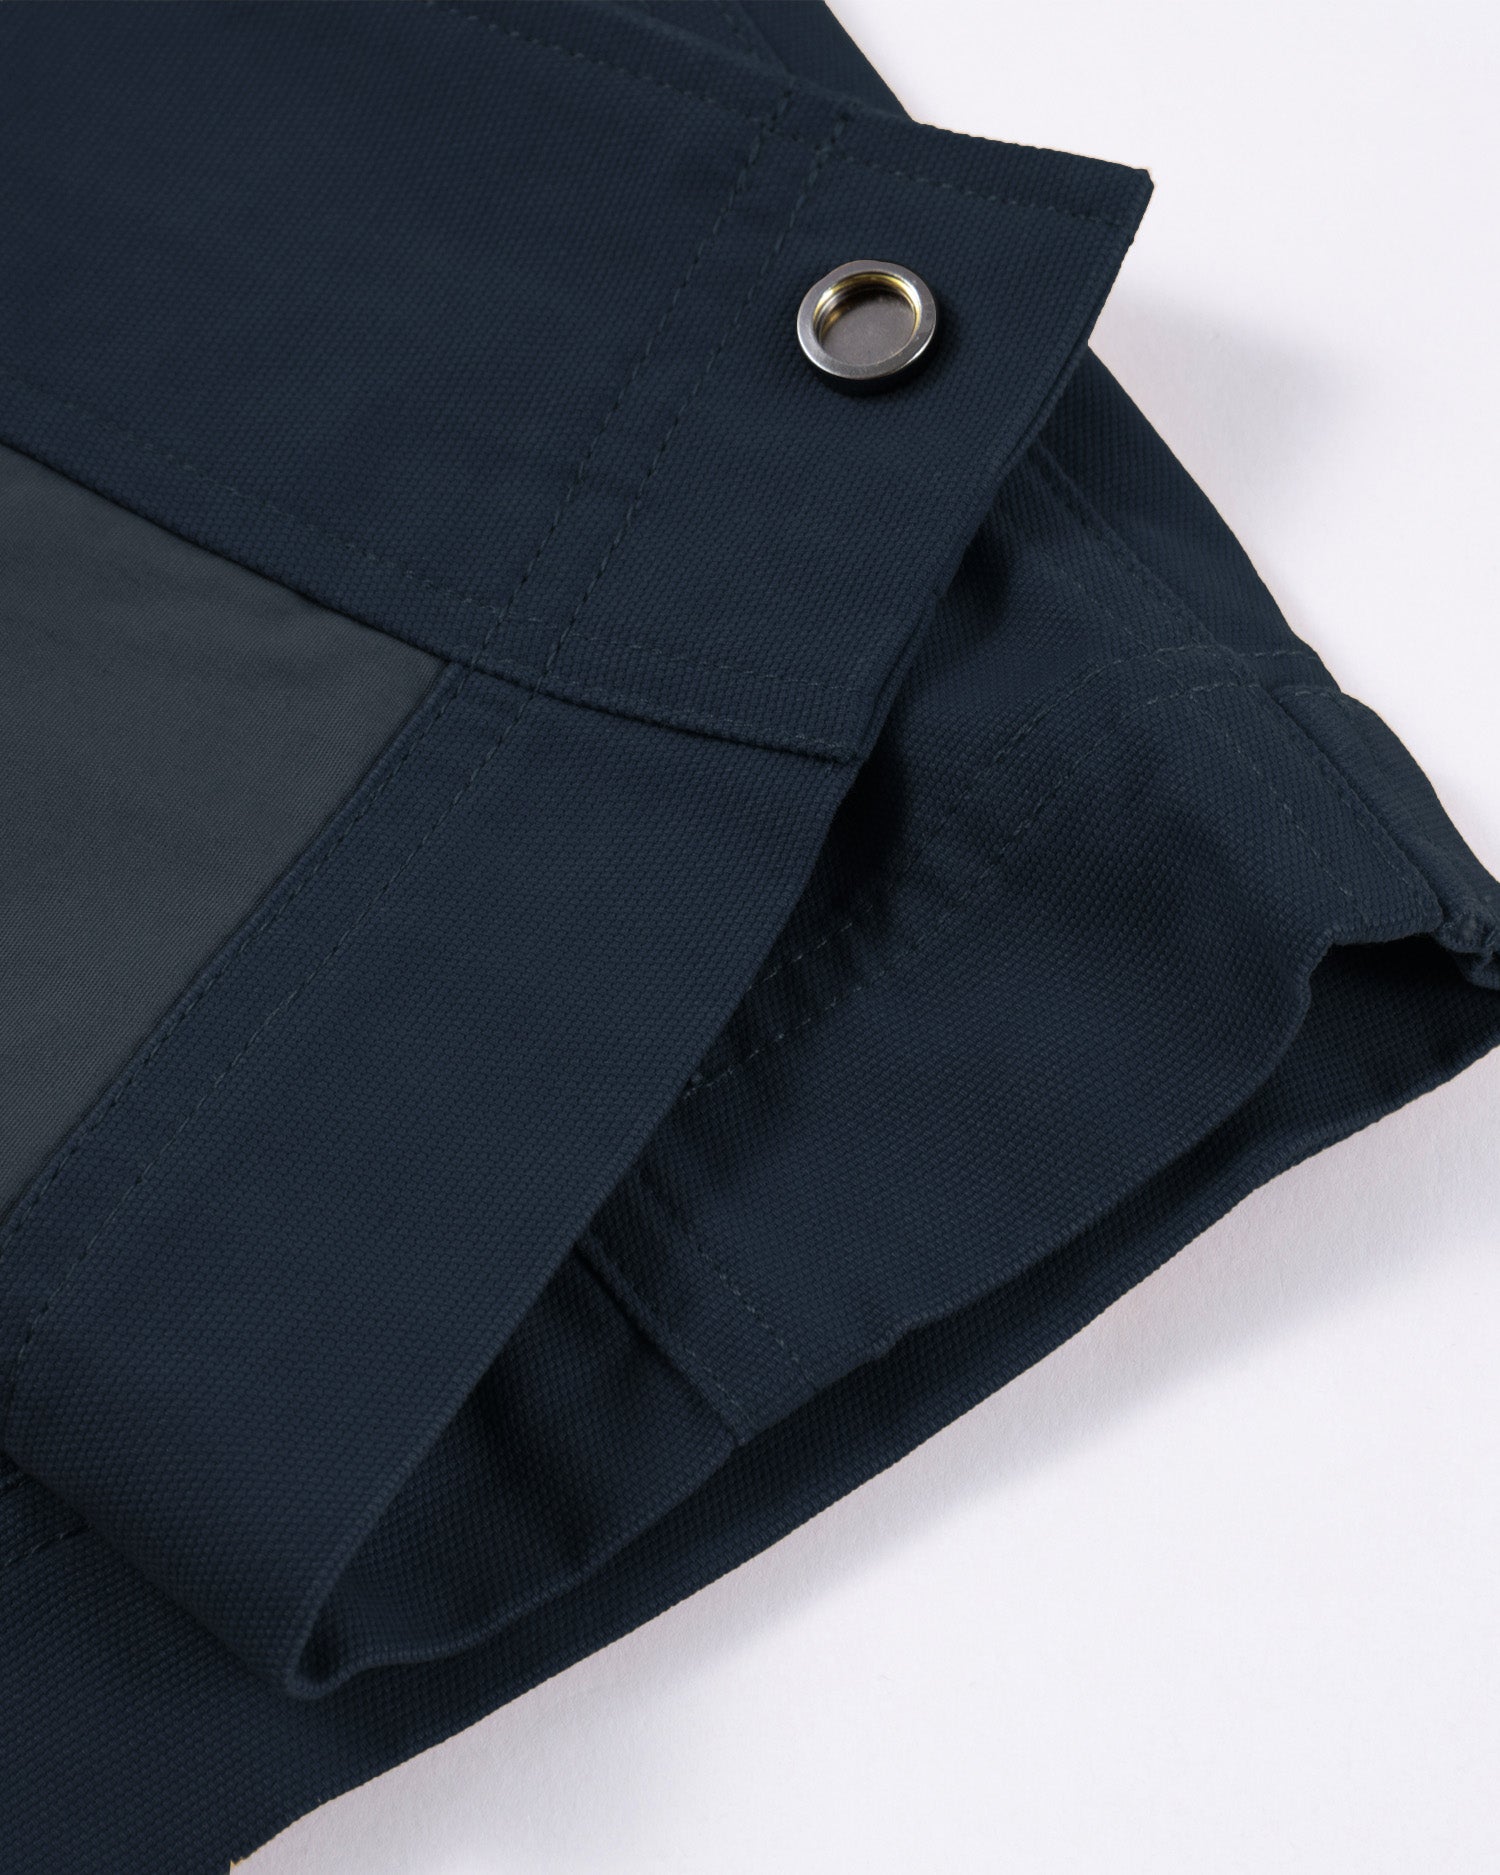 Men's Chore Jacket in Dark Blue 04 #dark-blue